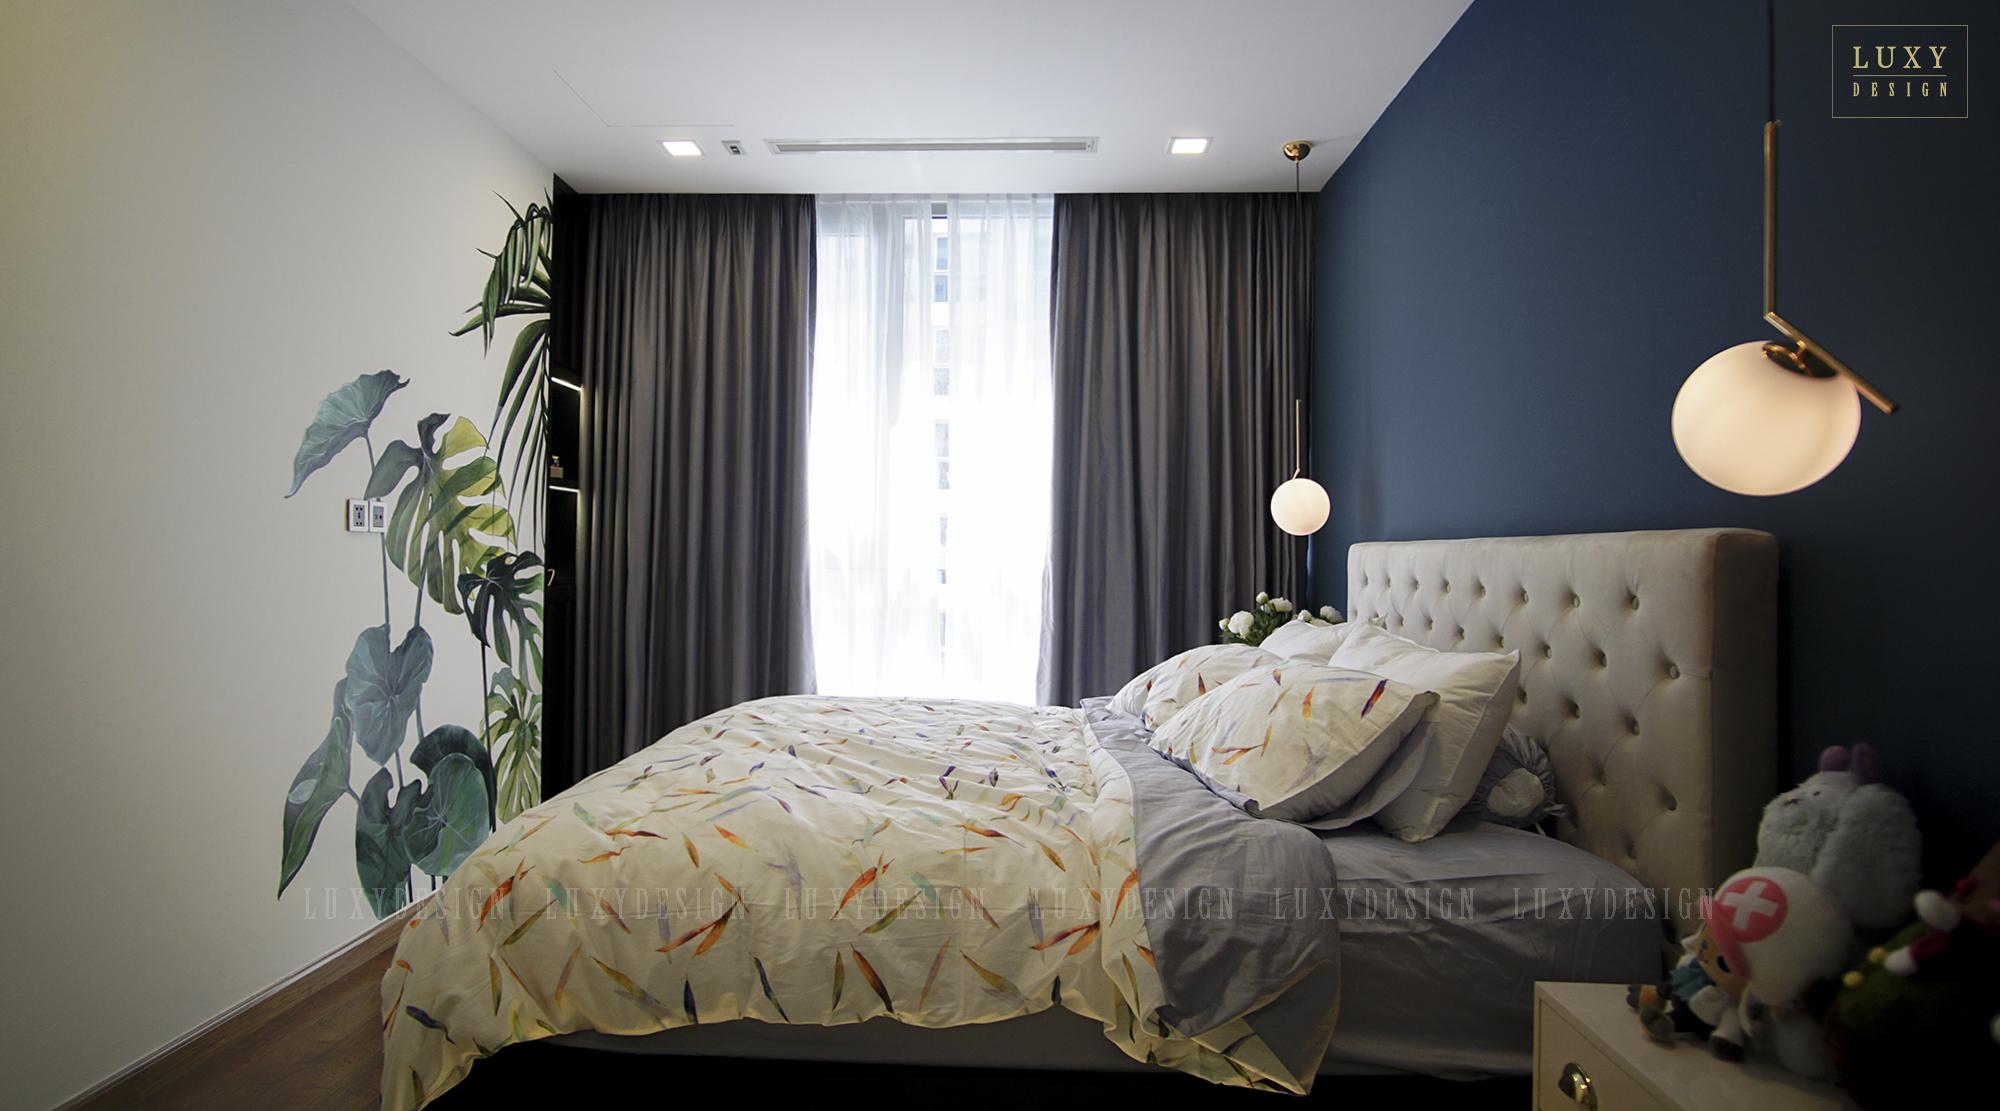 Thiết kế nội thất căn hộ Vinhomes 2PN - Phòng ngủ